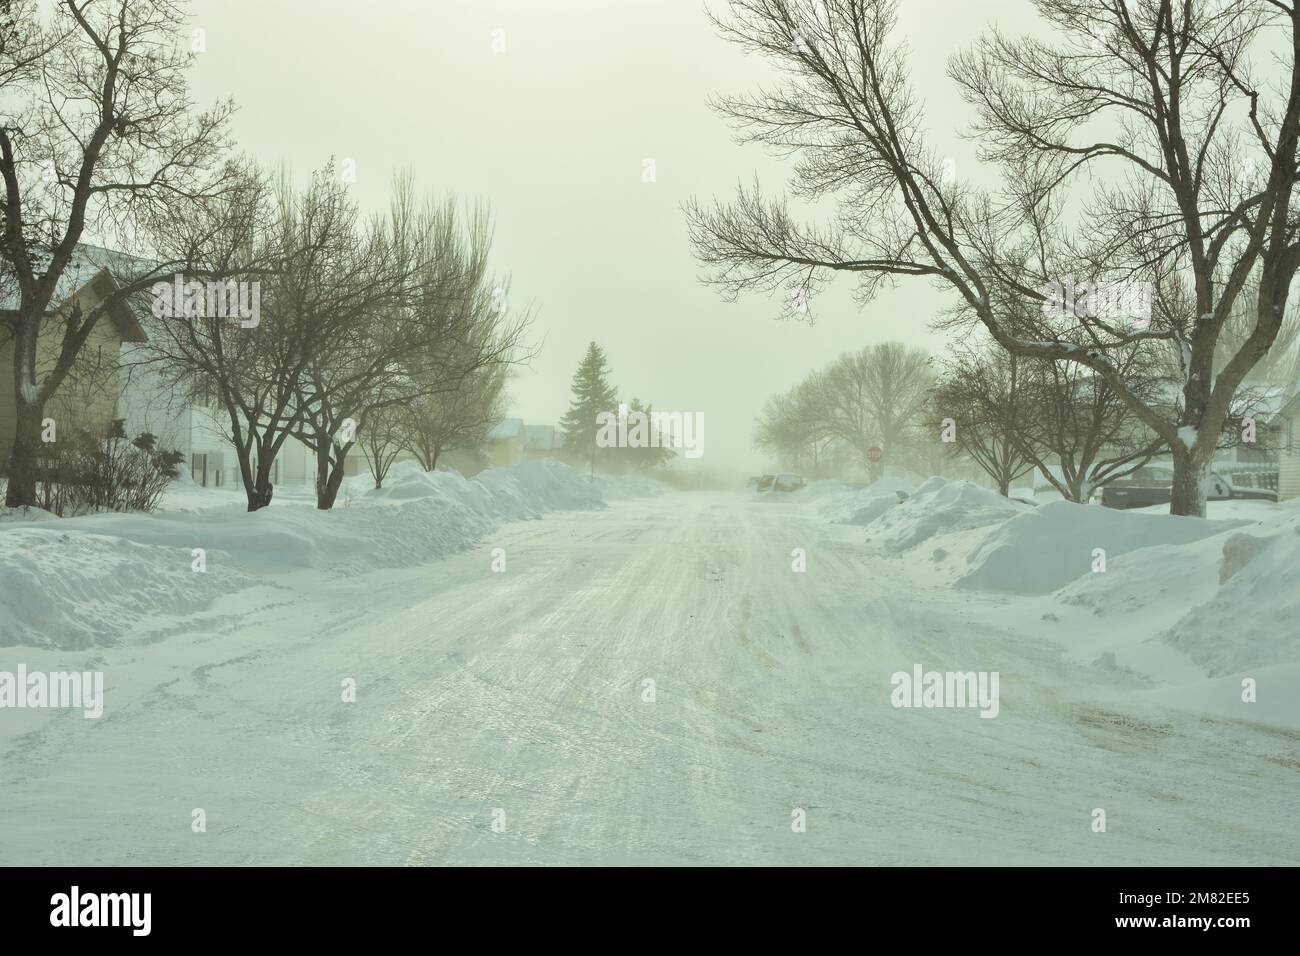 La neige est enroulée le long des rues de Bismarck, dans le Dakota du Nord, à la suite de chutes de neige abondantes de décembre, créant des conditions de conduite glissantes. Banque D'Images